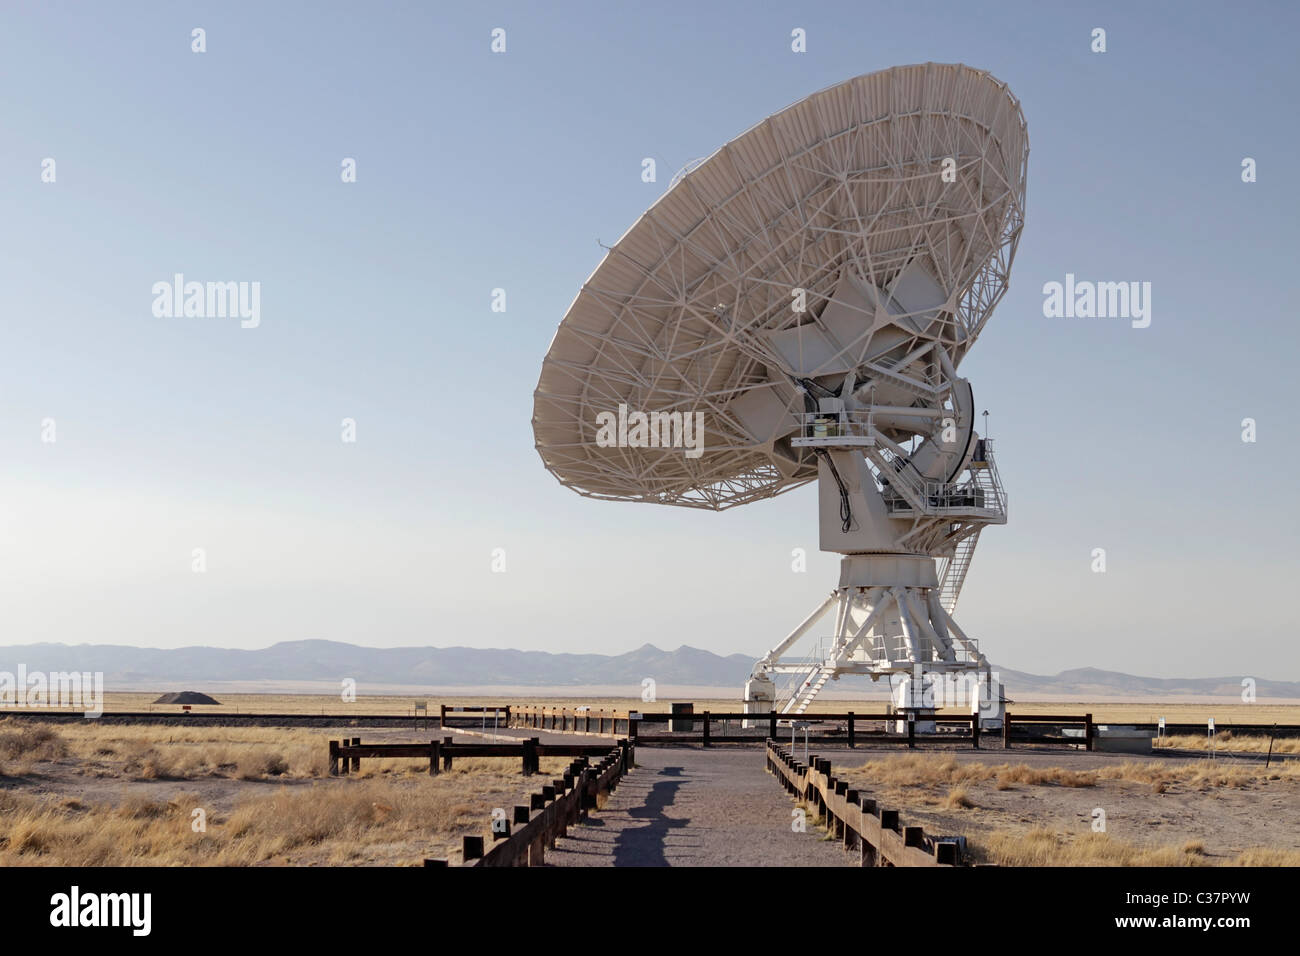 Molto grande schiera (VLA) radio astronomia osservatorio situato nei pressi di Socorro, Nuovo Messico, Stati Uniti d'America. Foto Stock